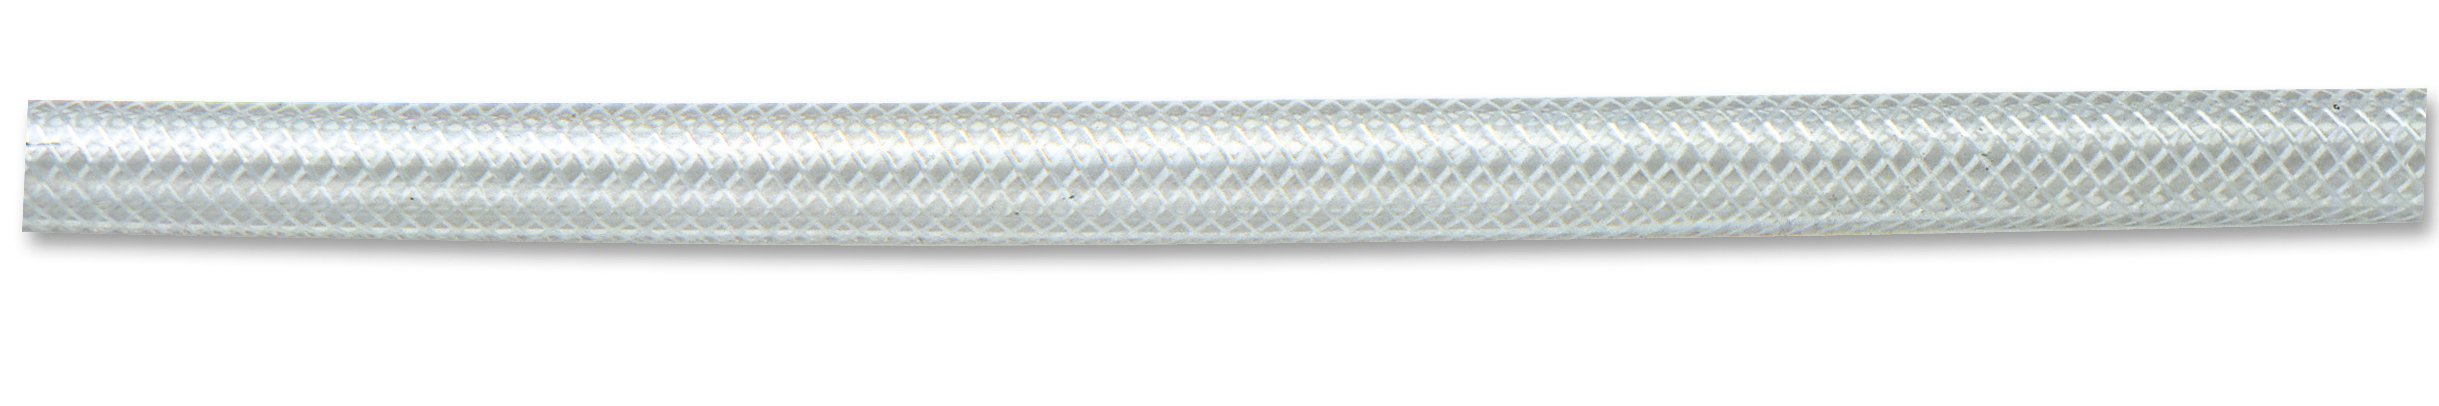 Chapuis BTR6 Schlauch aus verstärktem Kristall, PVC, Innendurchmesser 6 mm, Außendurchmesser 12 mm, Spule 50 m, transparent